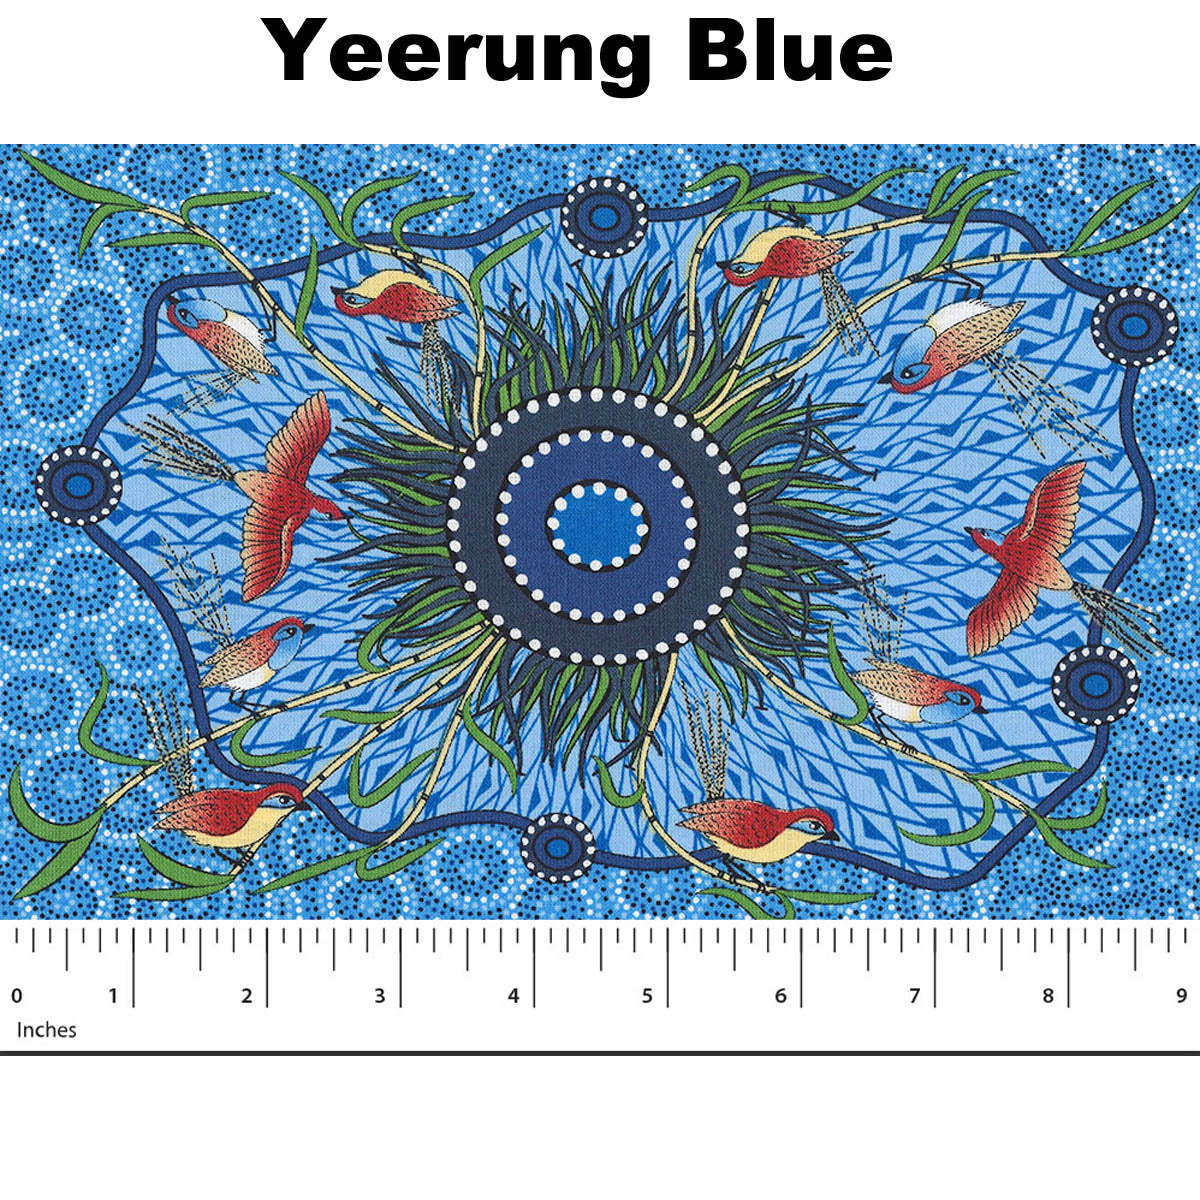 YEERUNG BLUE by Australian Aboriginal Artist Nambooka